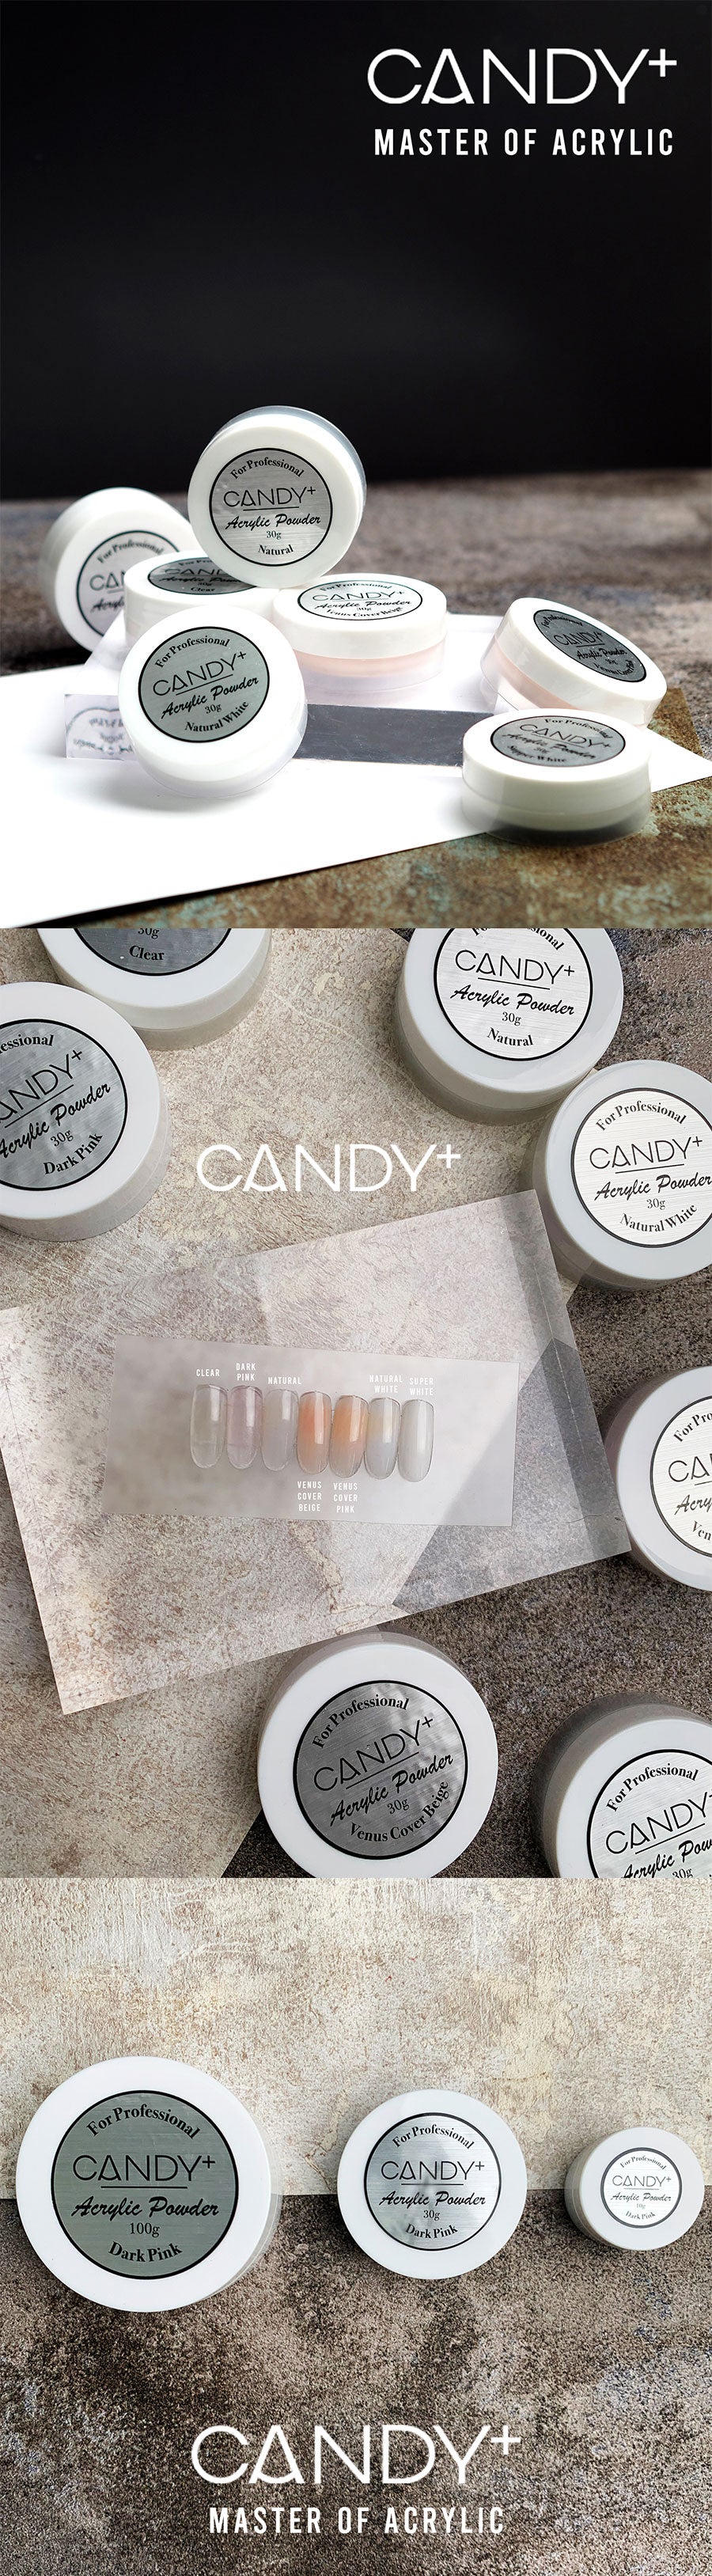 Candy+ Acrylic Powder Clear